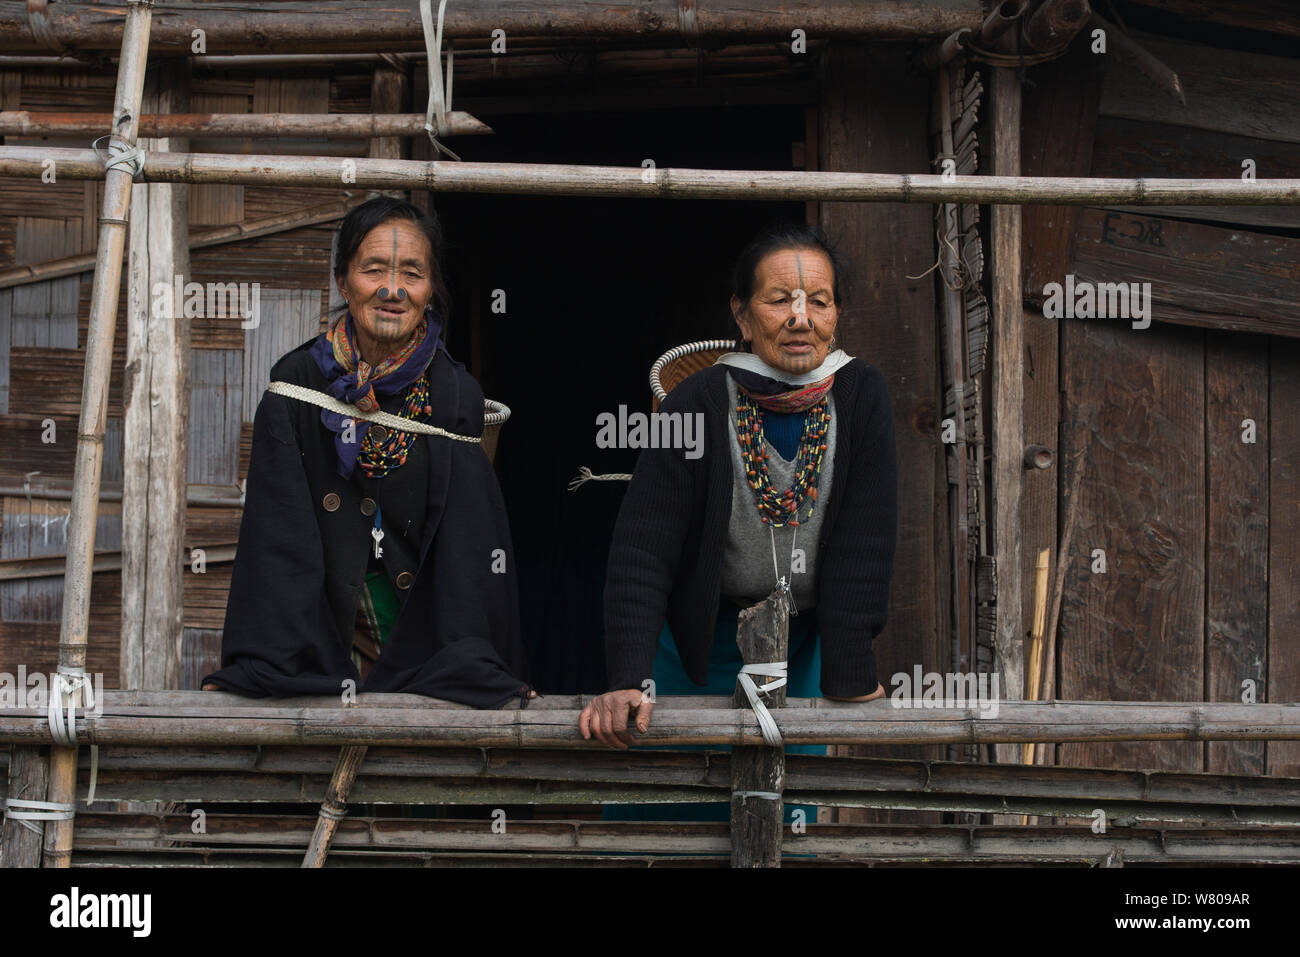 Las mujeres Apatani con tatuajes faciales y nariz tradicionales tapones / Yapin Hulo realizados para que parezcan poco atractivas para los hombres de otras tribus. Estas modificaciones faciales están ahora prohibidos. Apatani tribu, Ziro Valle, estribaciones del Himalaya, Arunachal Pradesh.En el noreste de la India, en noviembre de 2014. Foto de stock